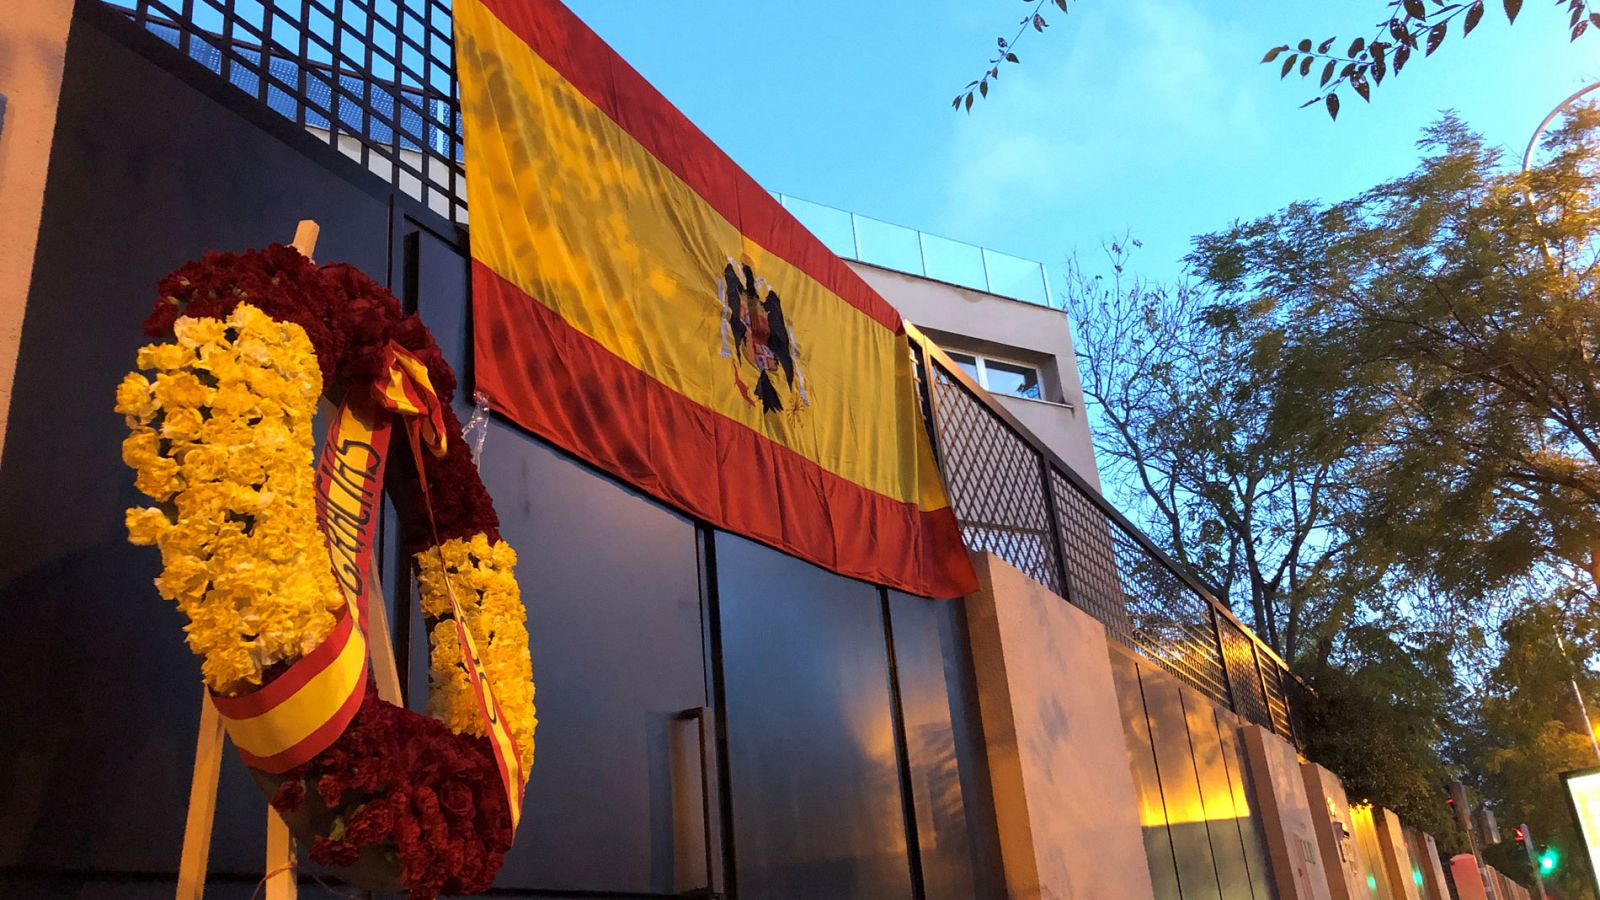 Exhumación Franco: Francis Franco coloca la bandera preconstitucional de España en su oficina antes de la exhumación